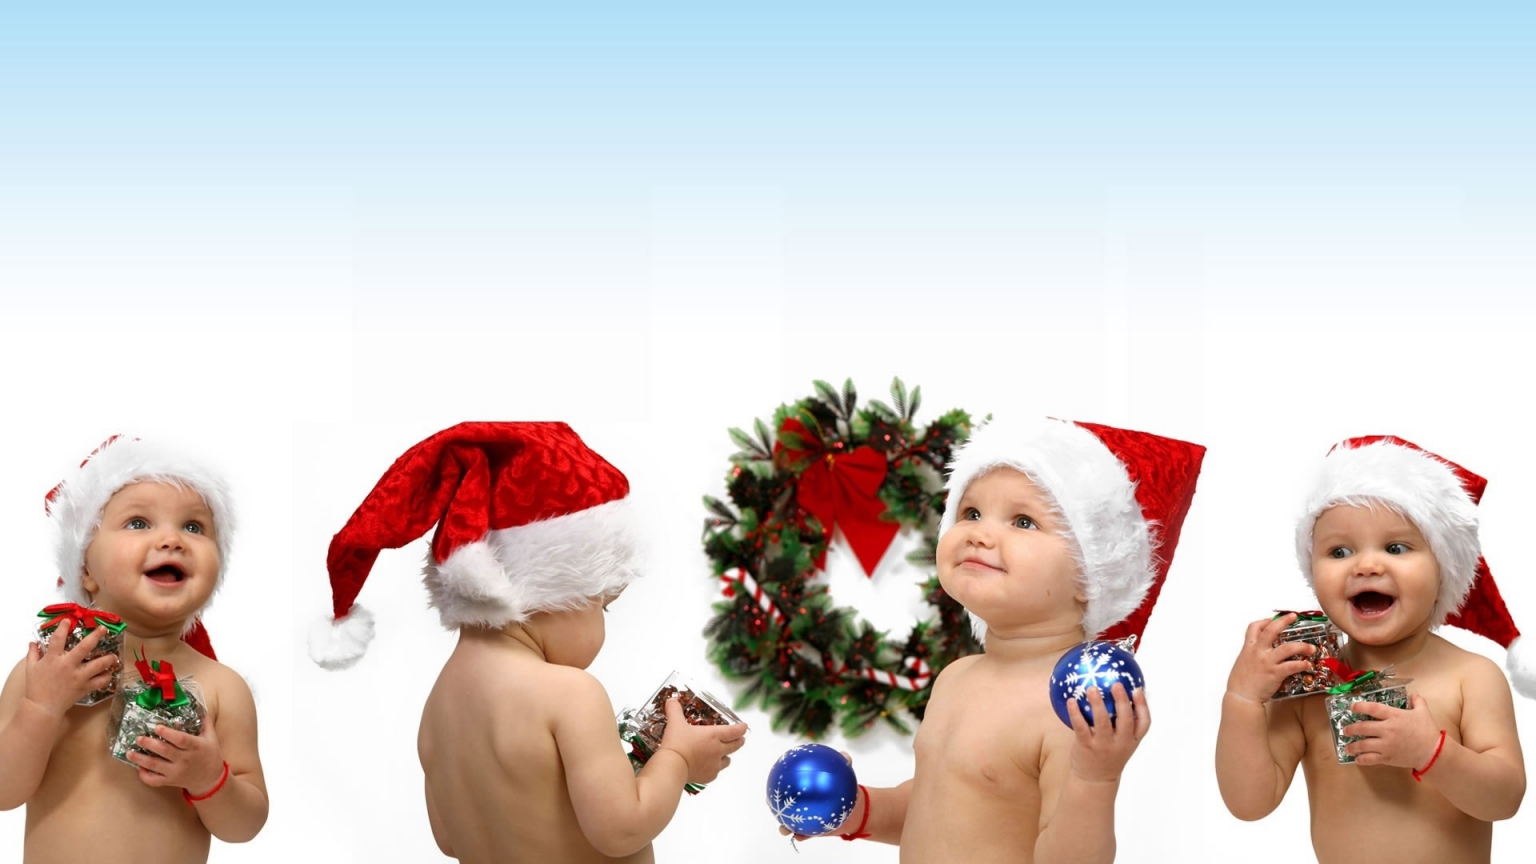 Christmas children for 1536 x 864 HDTV resolution